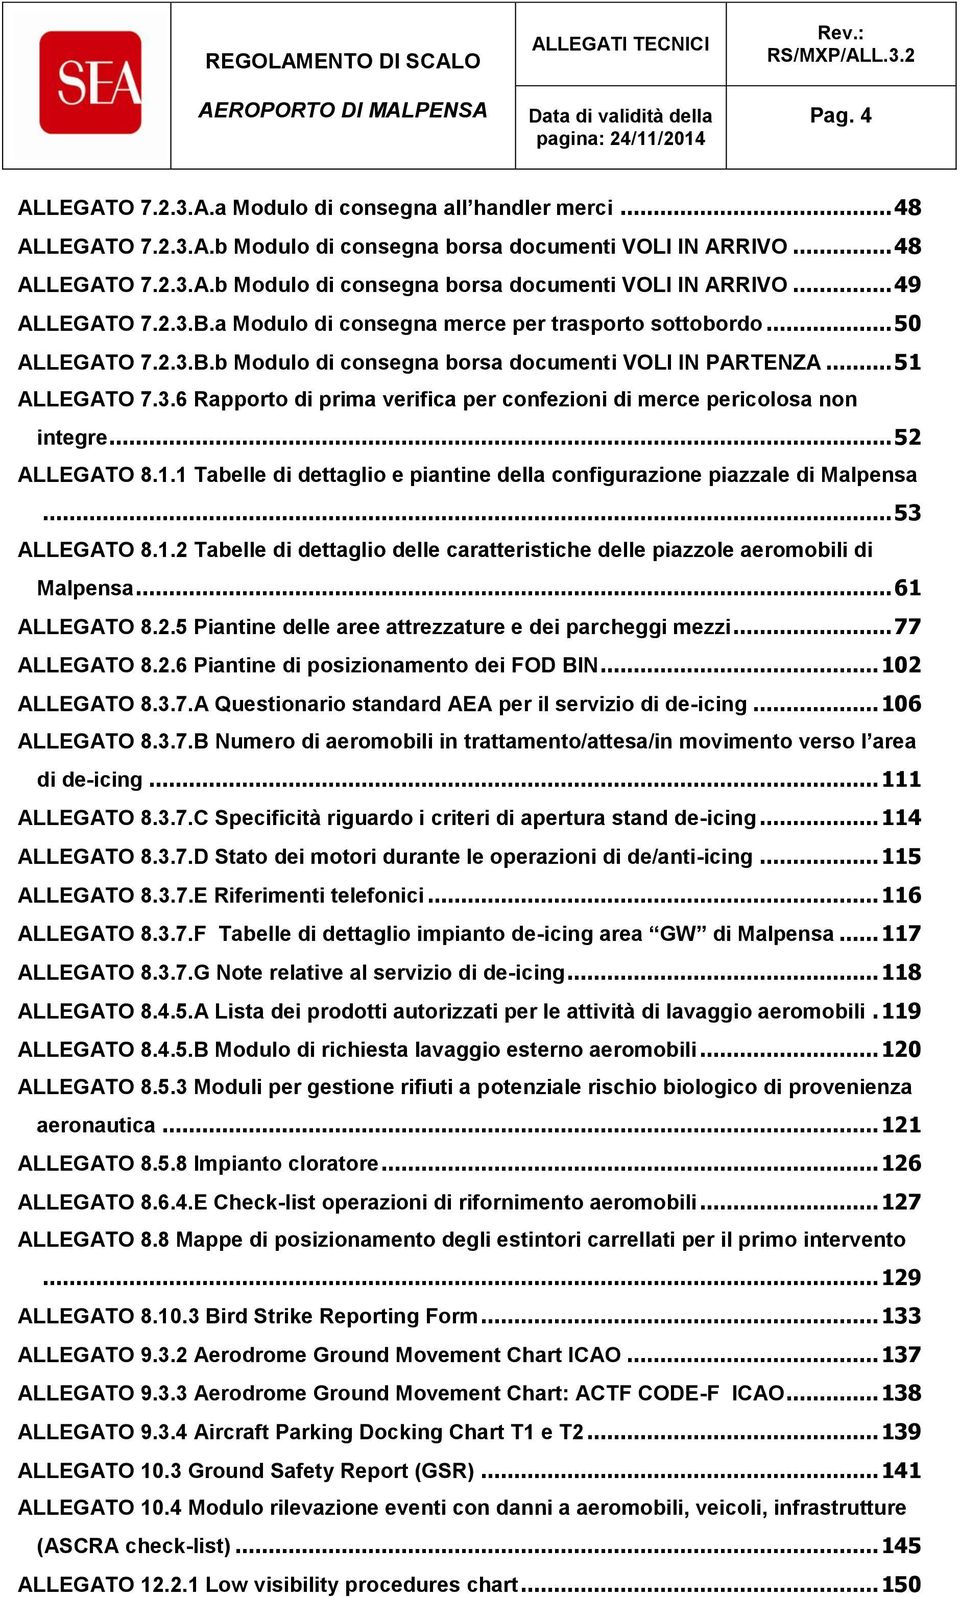 .. 52 ALLEGATO 8.1.1 Tabelle di dettaglio e piantine della configurazione piazzale di Malpensa... 53 ALLEGATO 8.1.2 Tabelle di dettaglio delle caratteristiche delle piazzole aeromobili di Malpensa.